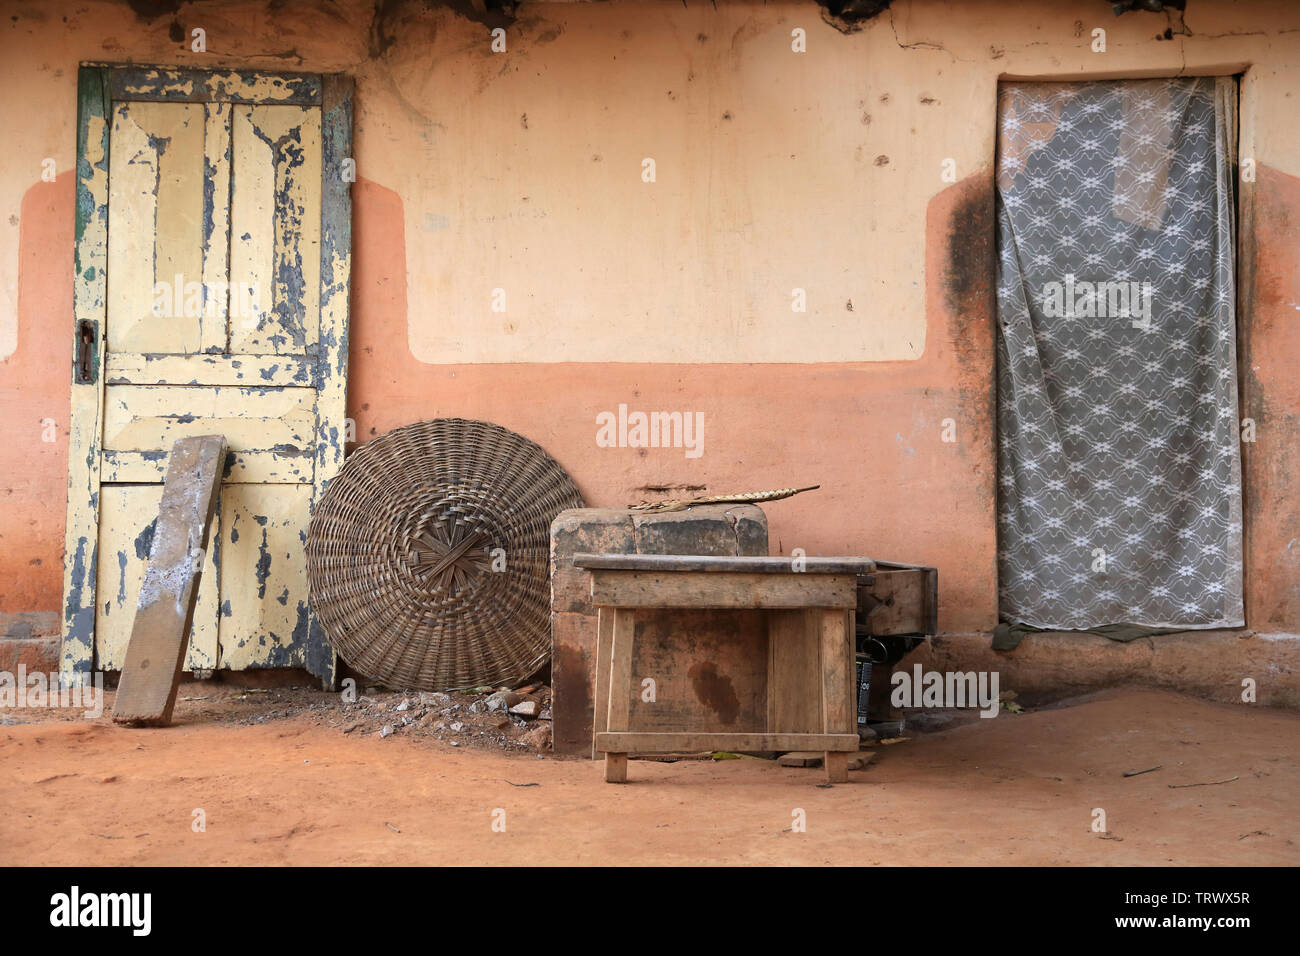 Fassade d'une Habitation au Togo. Afrique de l'Ouest. Stockfoto